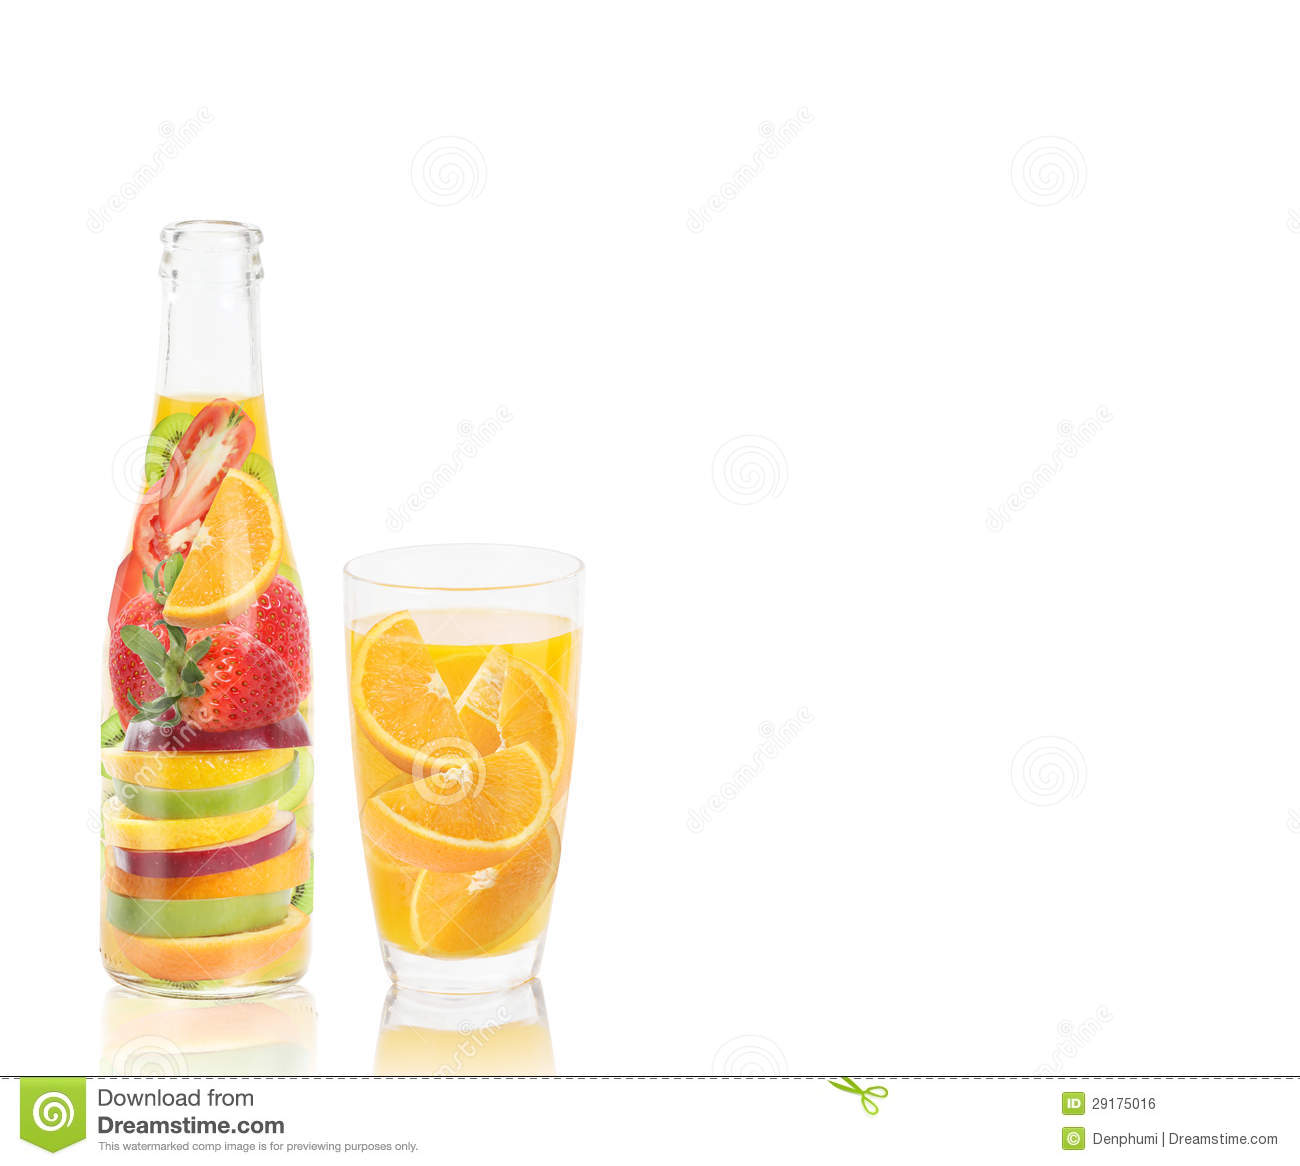 Fruit Juice Vitamin Bottle Royalty Free Stock Image   Image  29175016